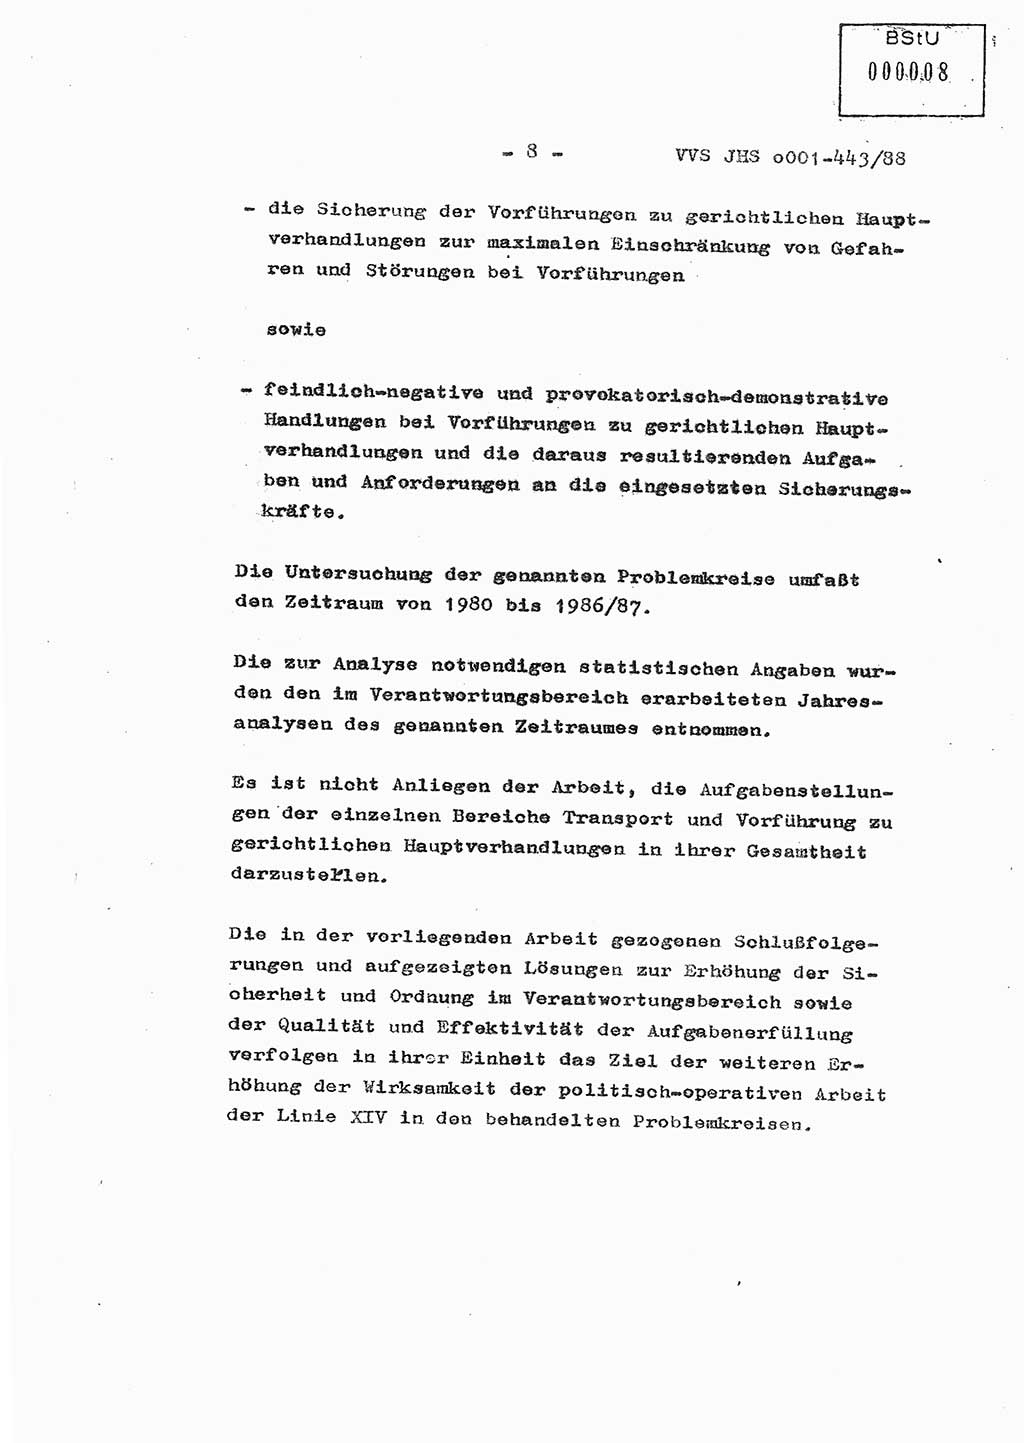 Diplomarbeit Hauptmann Michael Rast (Abt. ⅩⅣ), Major Bernd Rahaus (Abt. ⅩⅣ), Ministerium für Staatssicherheit (MfS) [Deutsche Demokratische Republik (DDR)], Juristische Hochschule (JHS), Vertrauliche Verschlußsache (VVS) o001-443/88, Potsdam 1988, Seite 8 (Dipl.-Arb. MfS DDR JHS VVS o001-443/88 1988, S. 8)